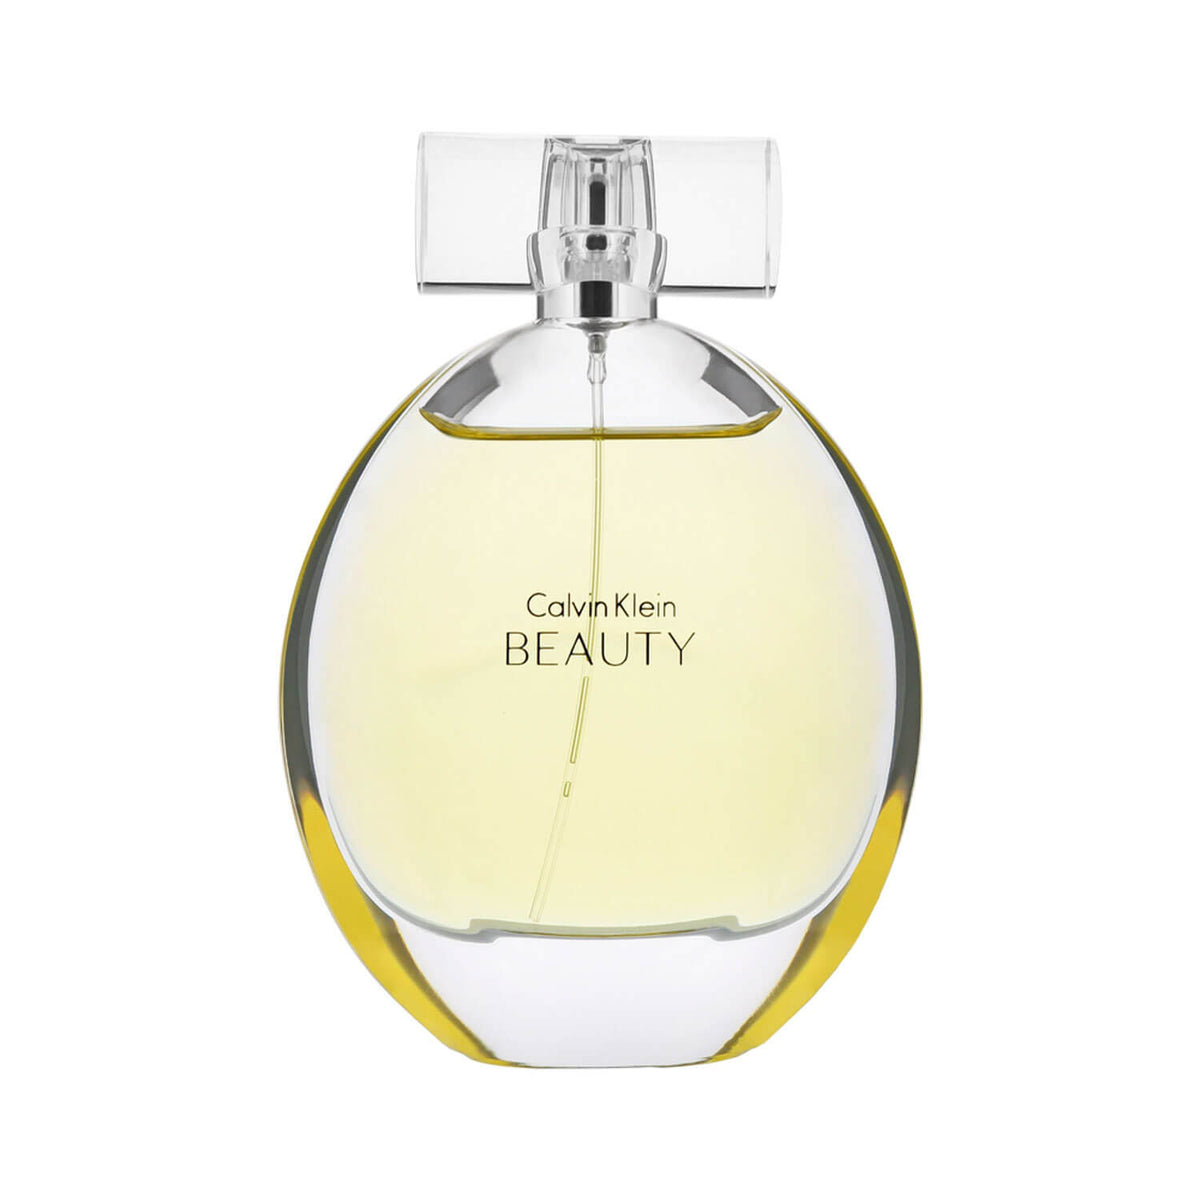 Beauty Eau De Parfum - 100ml